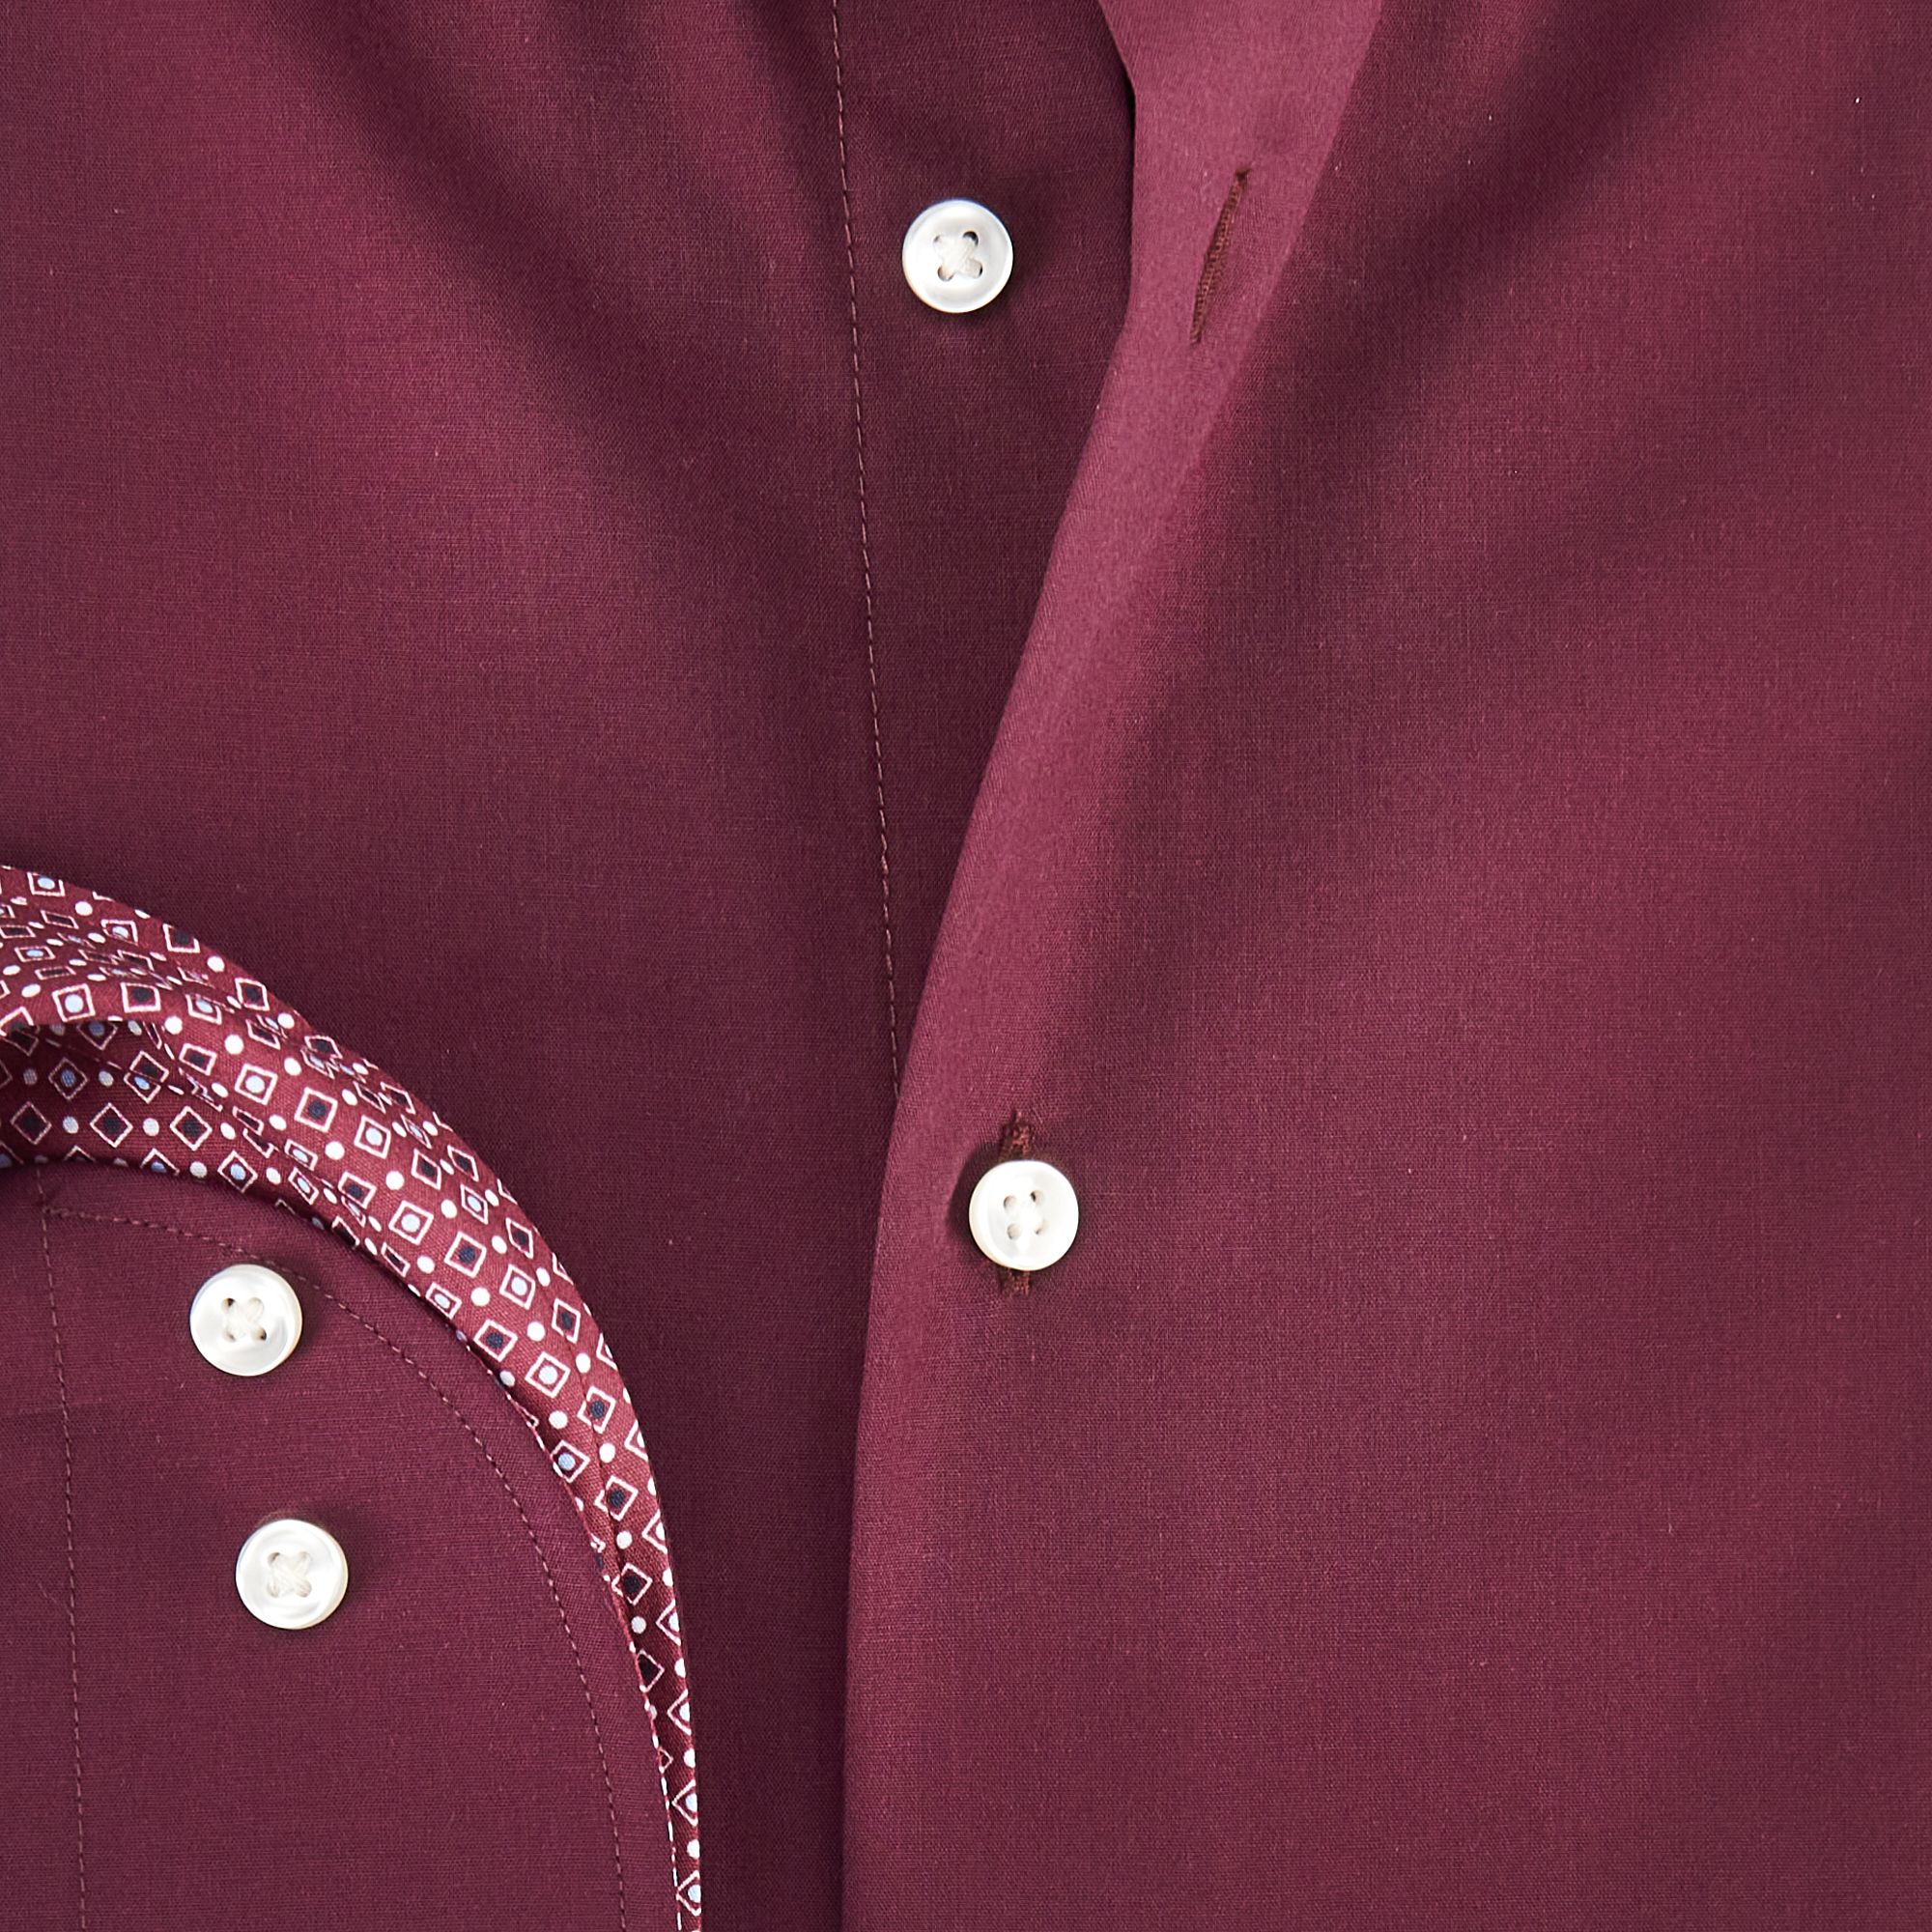 The BLUEPRINT Premium Casual Overhemd LM Bordeaux uni 082207-001-L